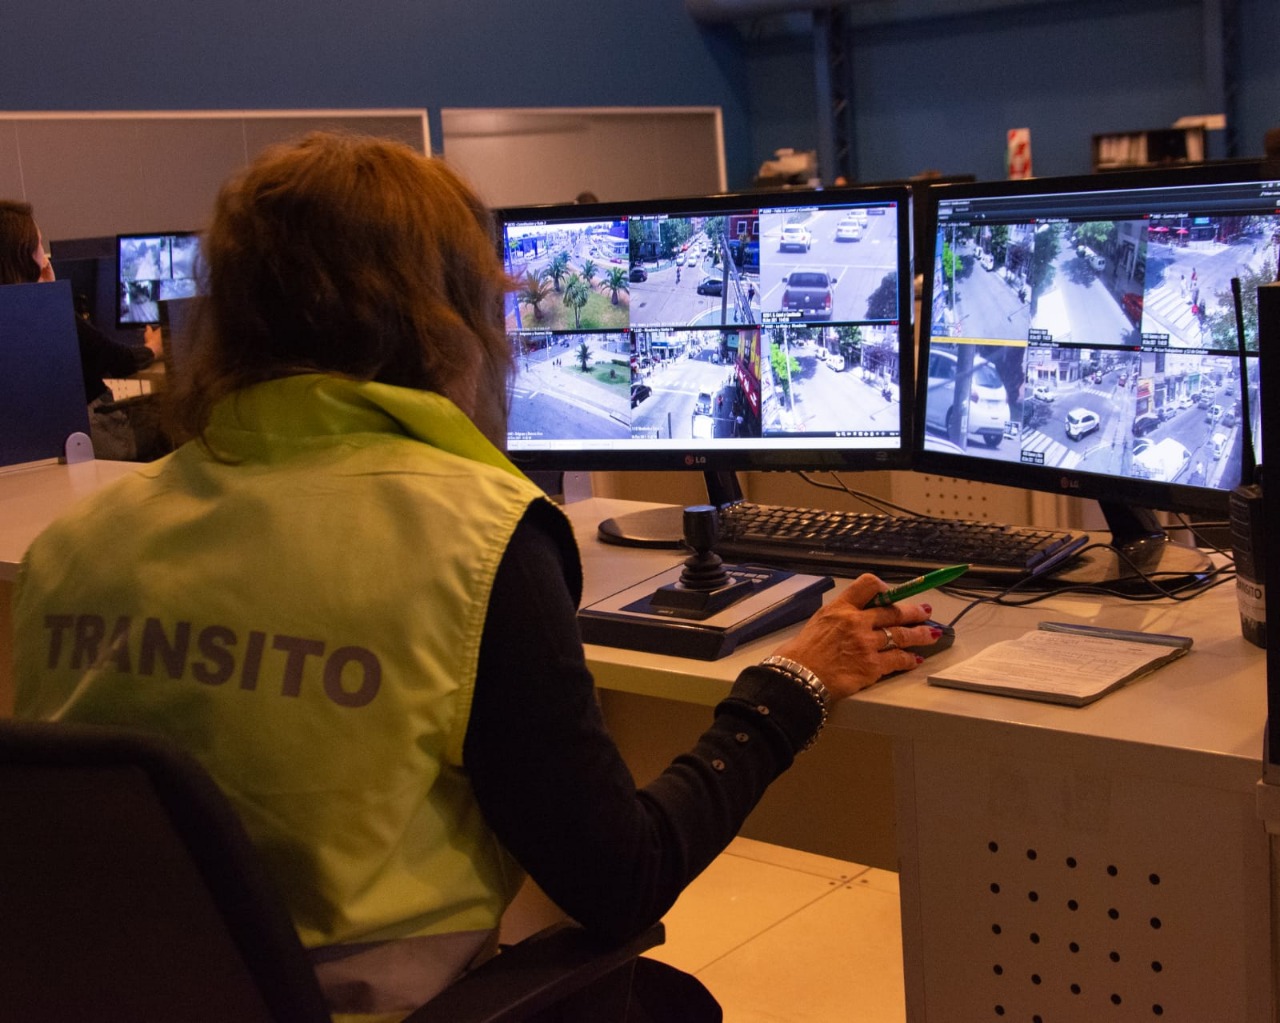 Se labraron 83 infracciones en la primera jornada de visualización del tránsito desde las cámaras del COM